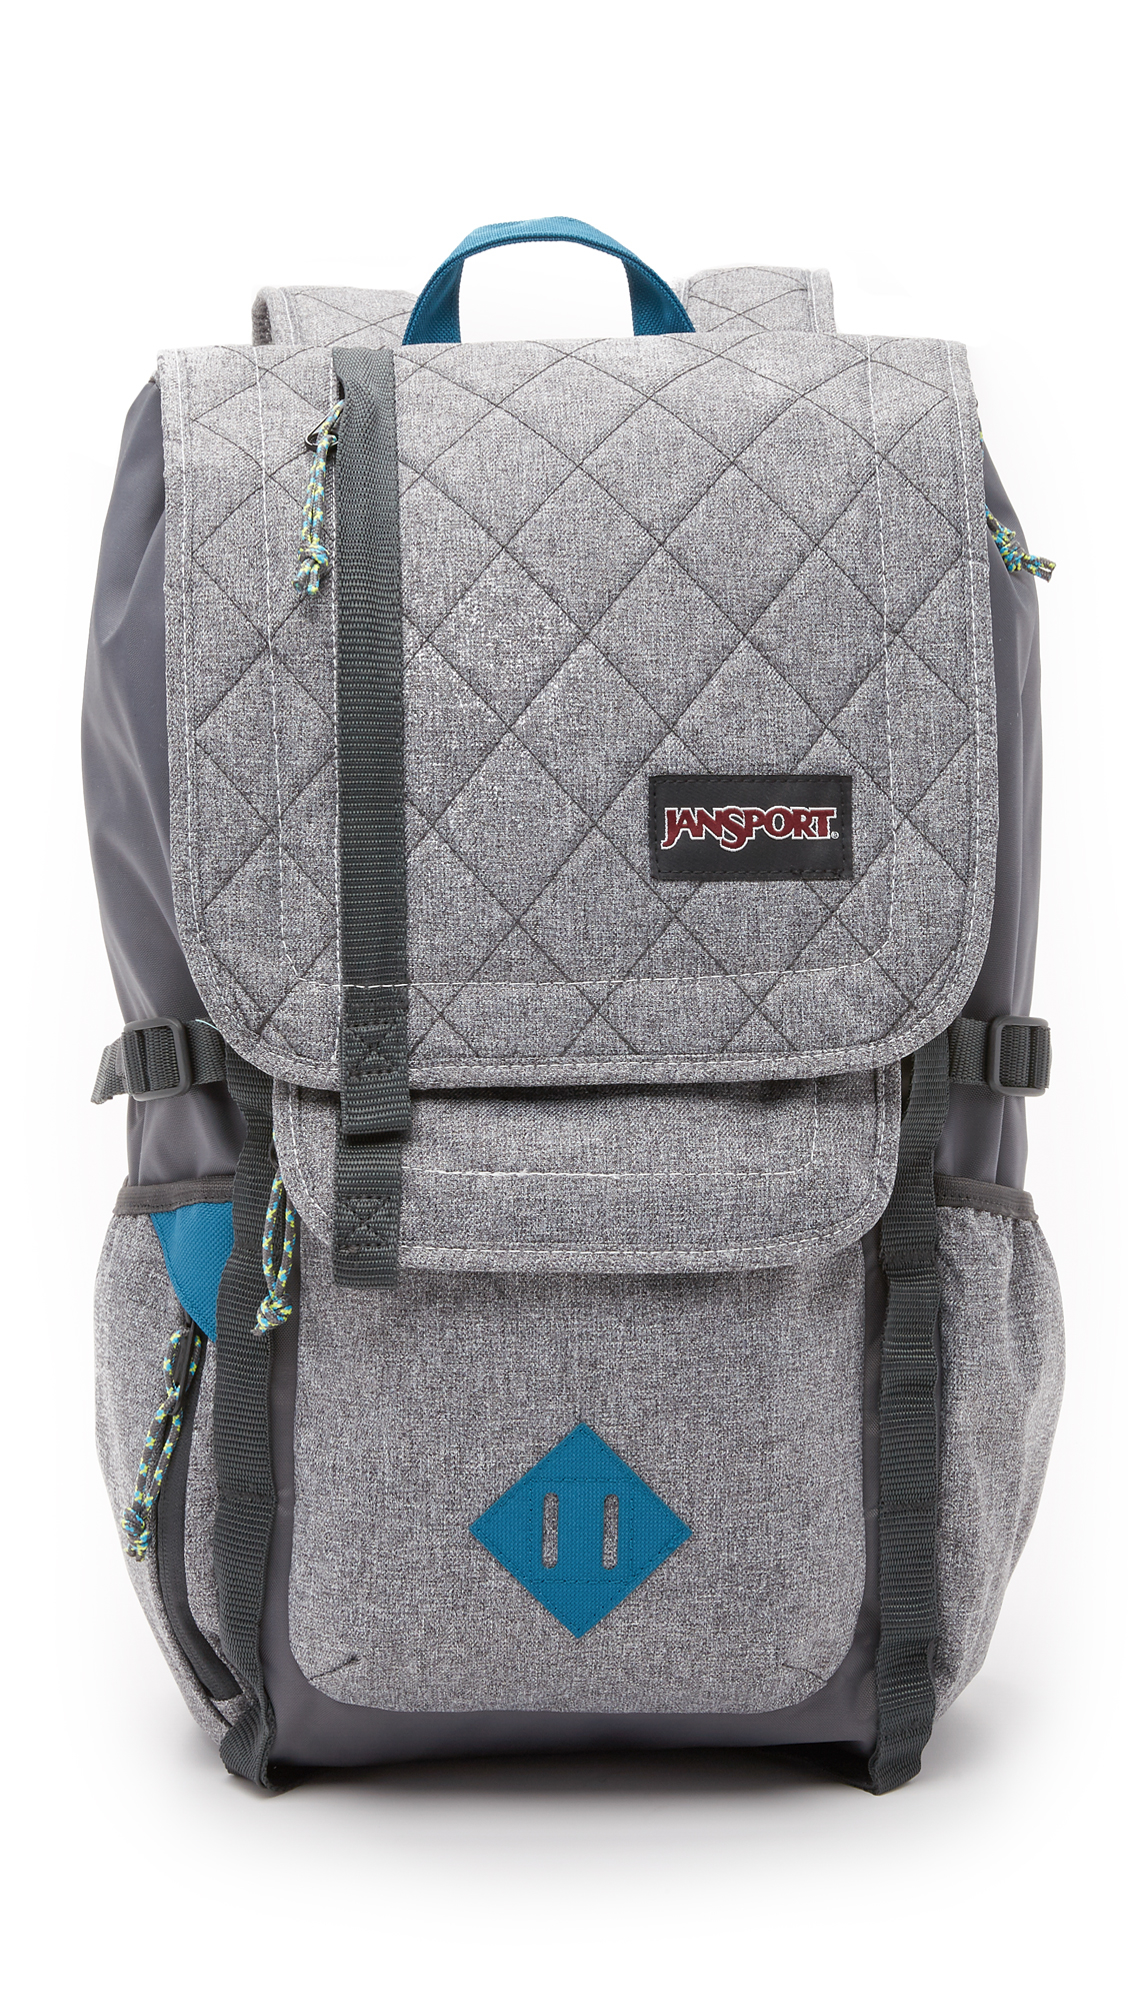 Jansport Hatchet Ld Backpack in Gray for Men - Lyst